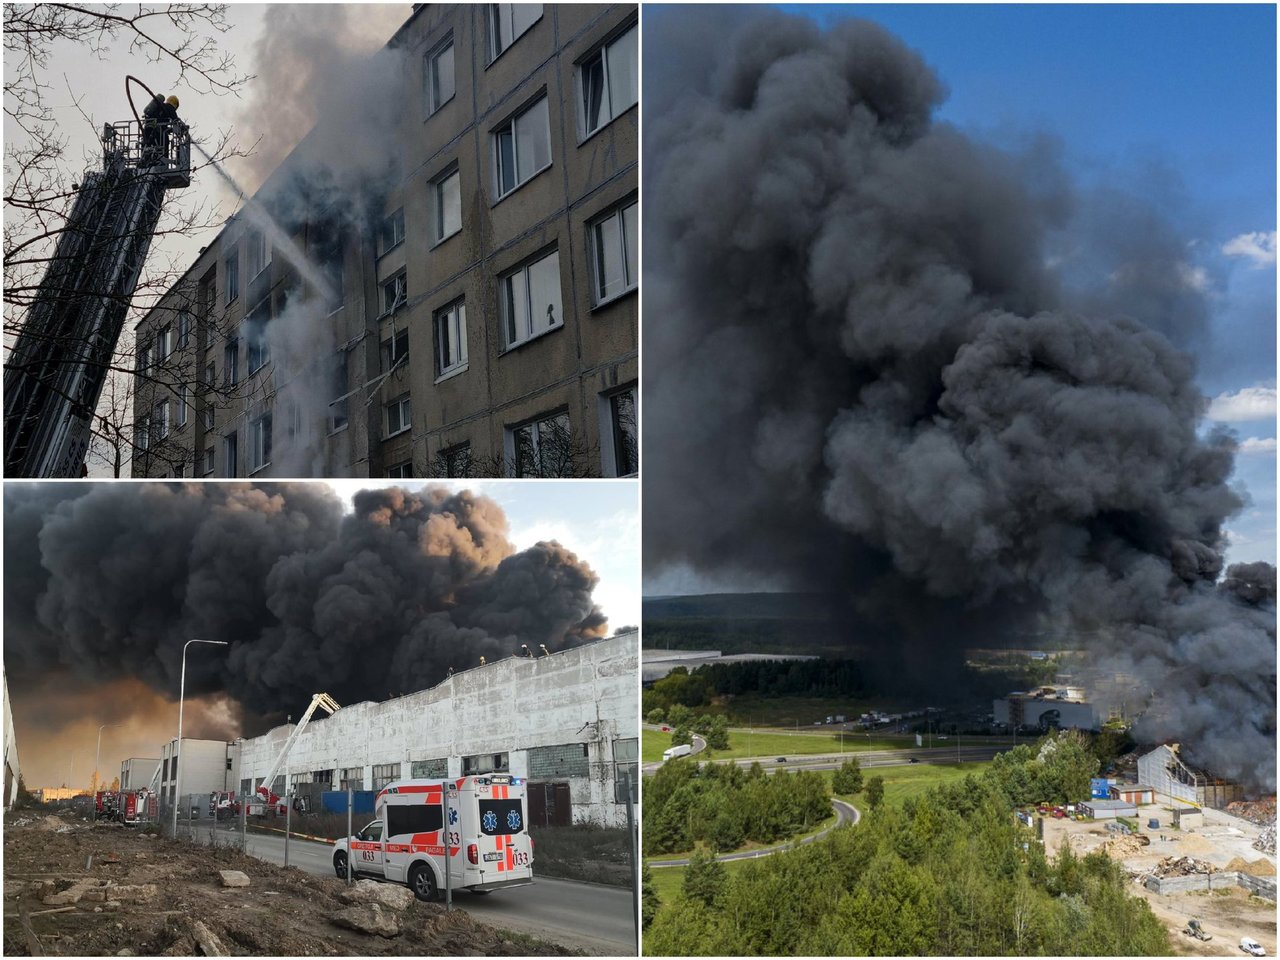 Keturi dideli gaisrai, kurie pastaraisiais metais tapo pavojingu išbandymu Lietuvos ugniagesiams